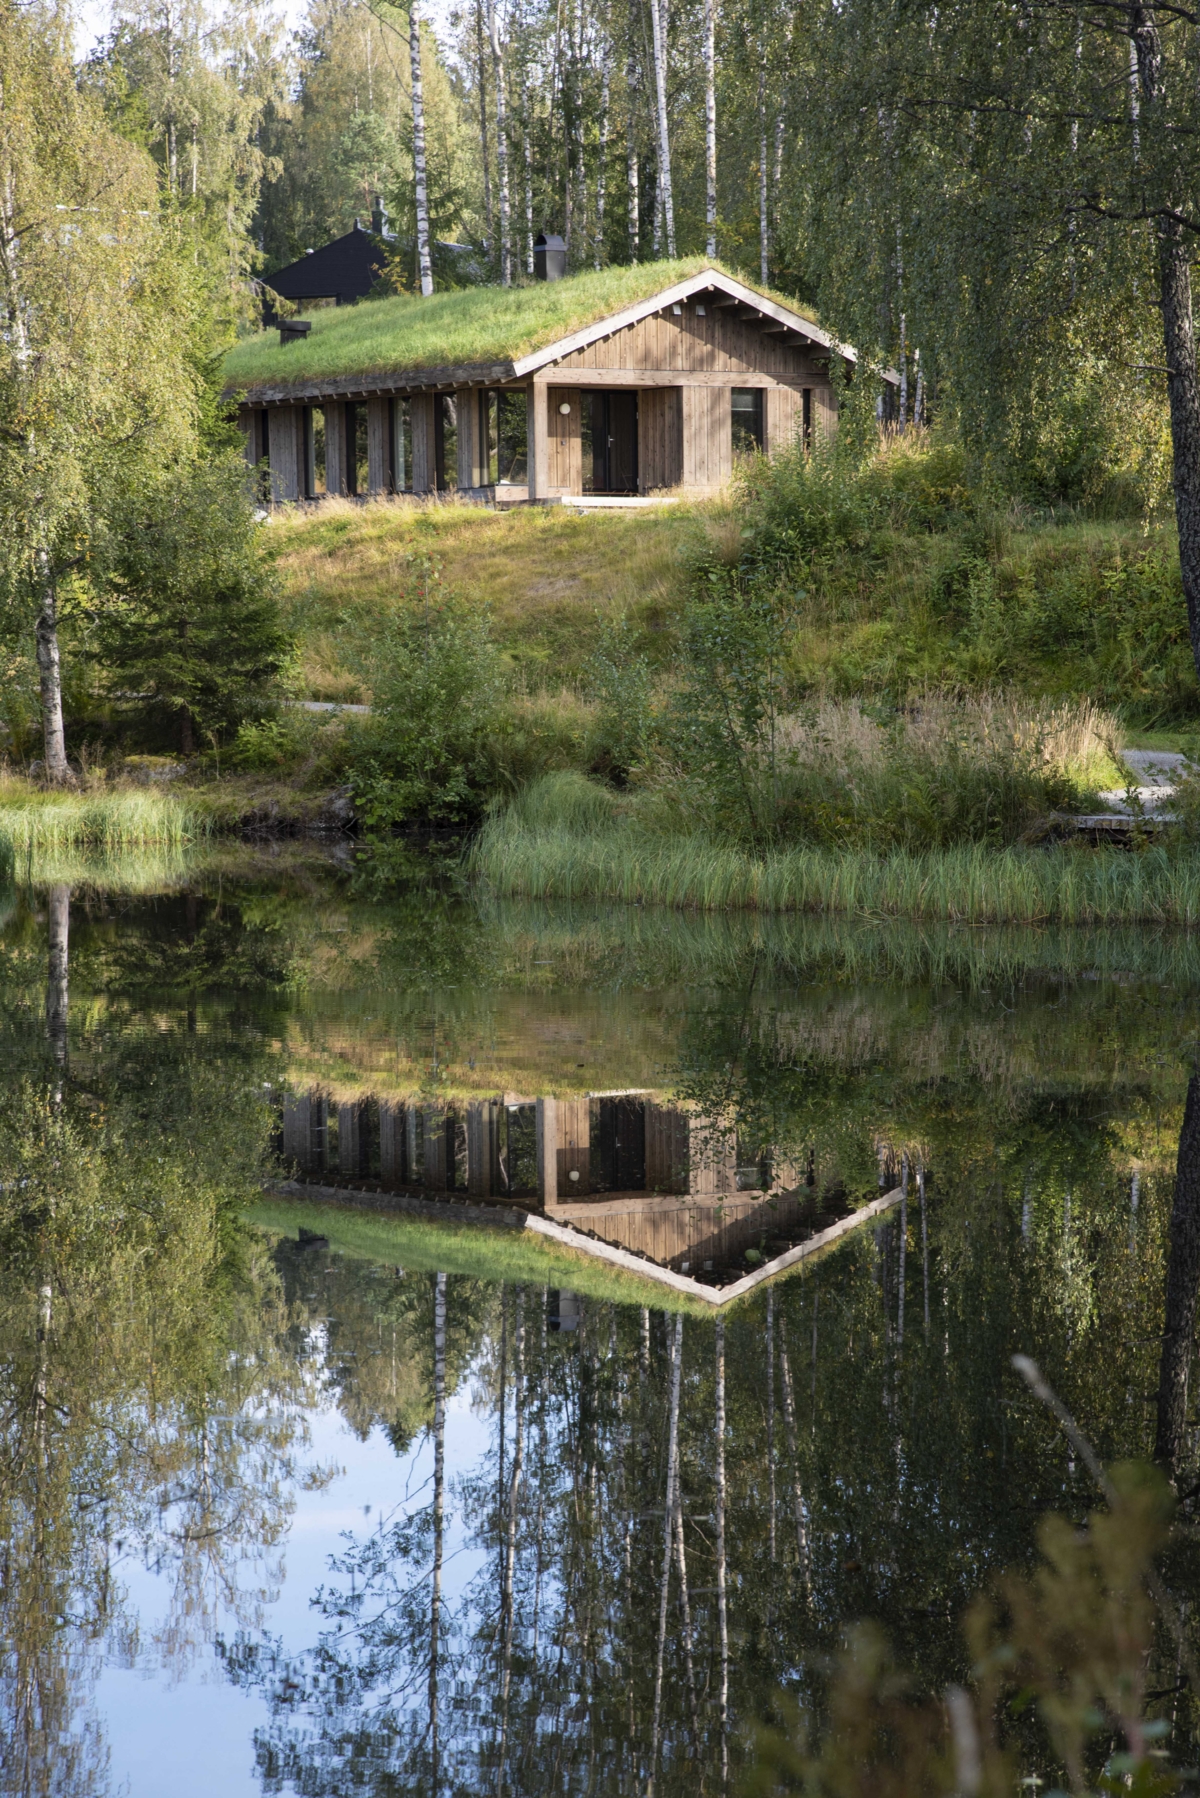 Moderne hytte med torvtak speiler seg i vannet.